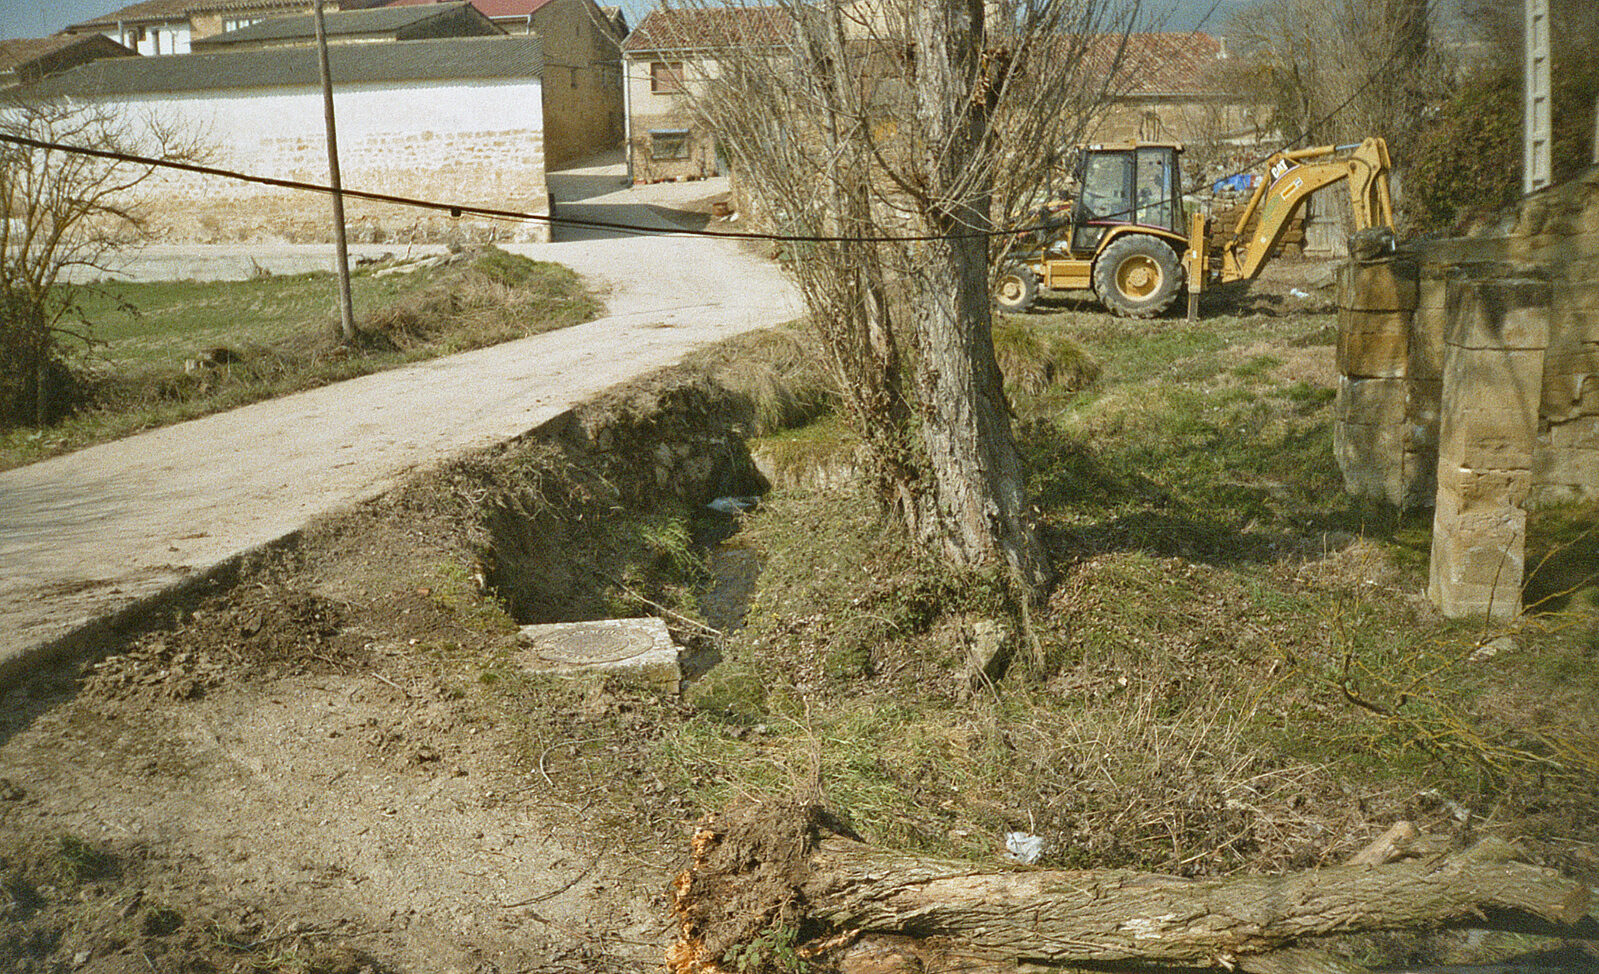  Estado del complejo fontanal de Castilseco antes de iniciarse las obras de restauración en 2005. En esta foto todavía se aprecia el «antiguo lavadero»: el canal que hay entre el camino y los chopos. El agua llegaba del rebosadero del arroyo (a la derecha de la retroexcavadora).